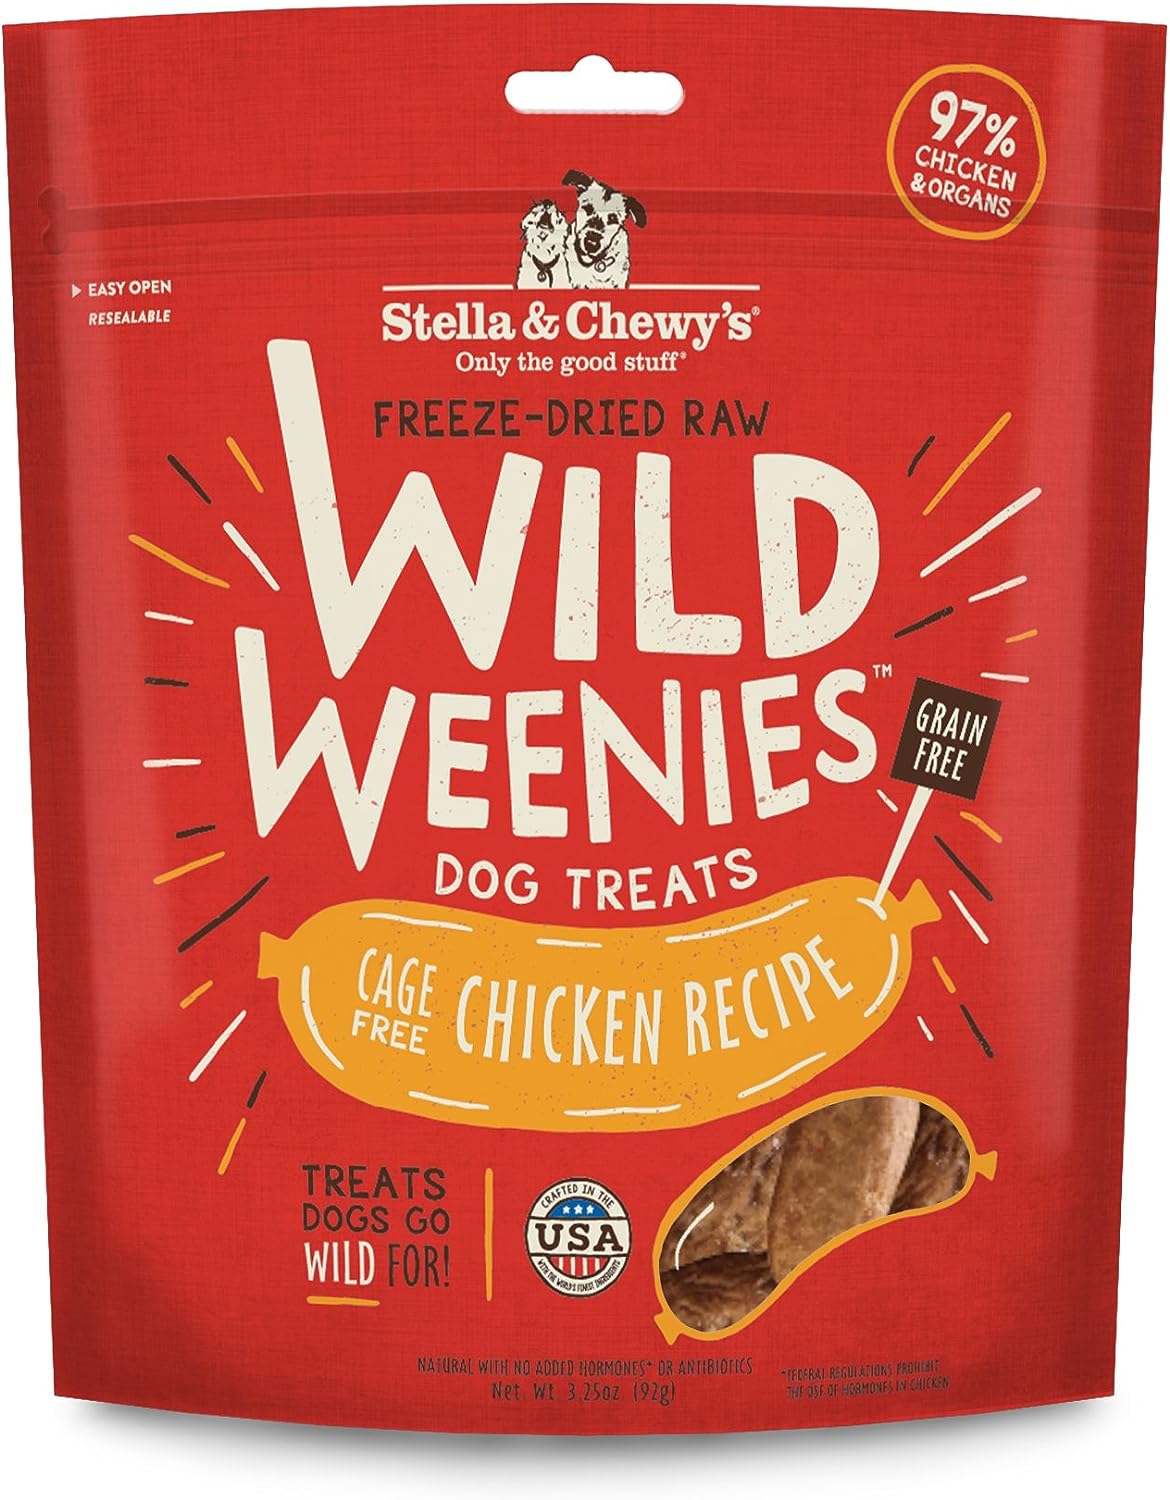 Stella & Chewy’s Freeze-Dried Raw Wild Weenies Dog Treats